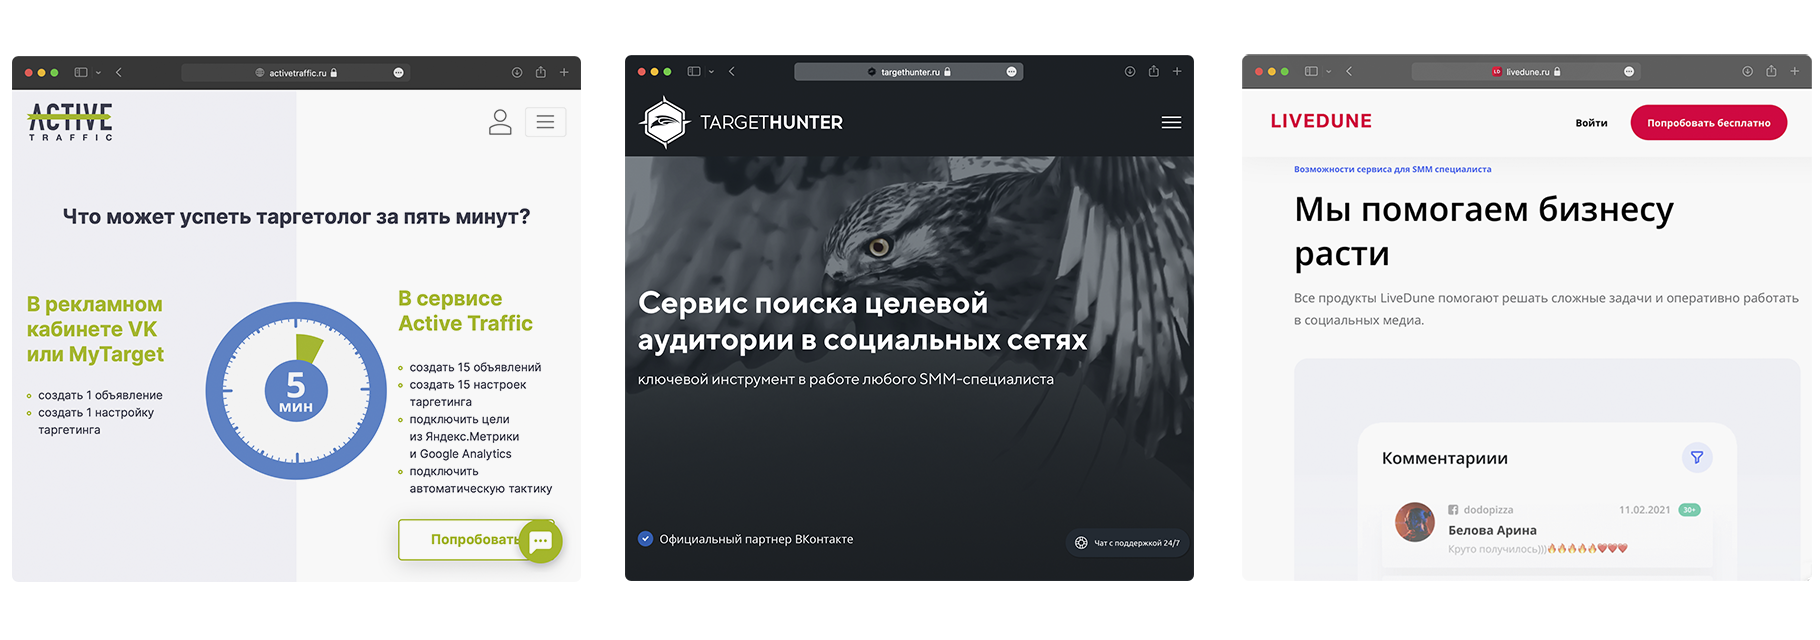 6 сервисов для рекламы и аналитики во «Вконтакте»